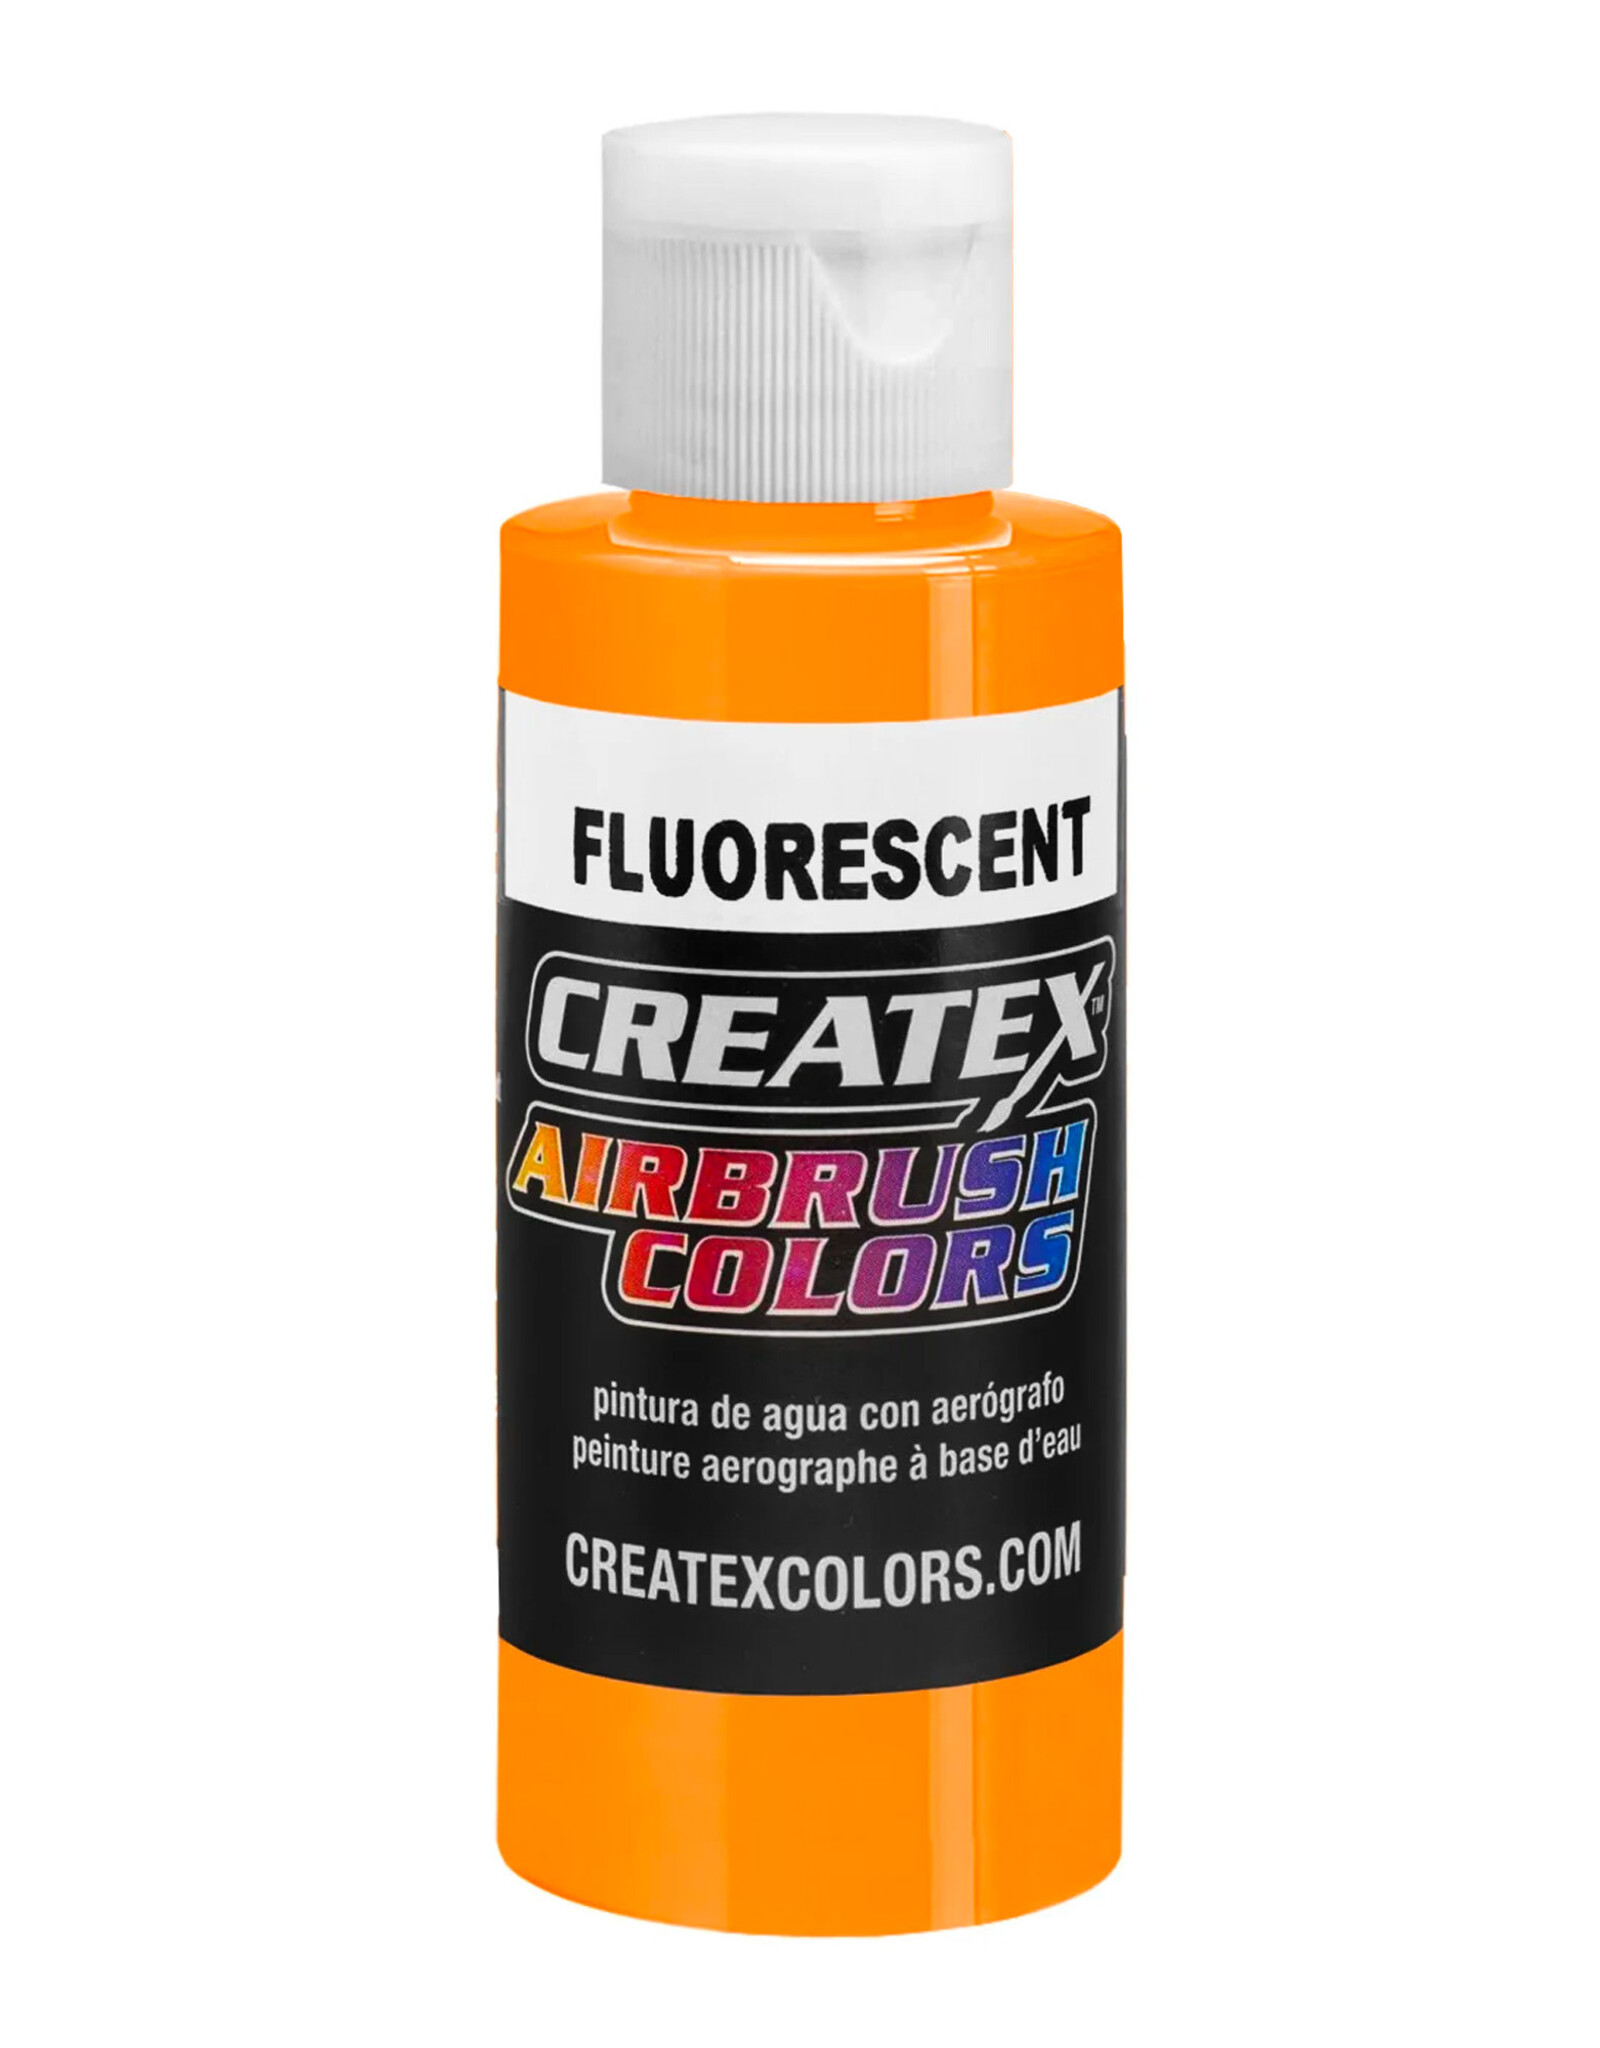 CREATEX COLORS Createx Airbrush Colors Fluorescent Sunburst, 4oz